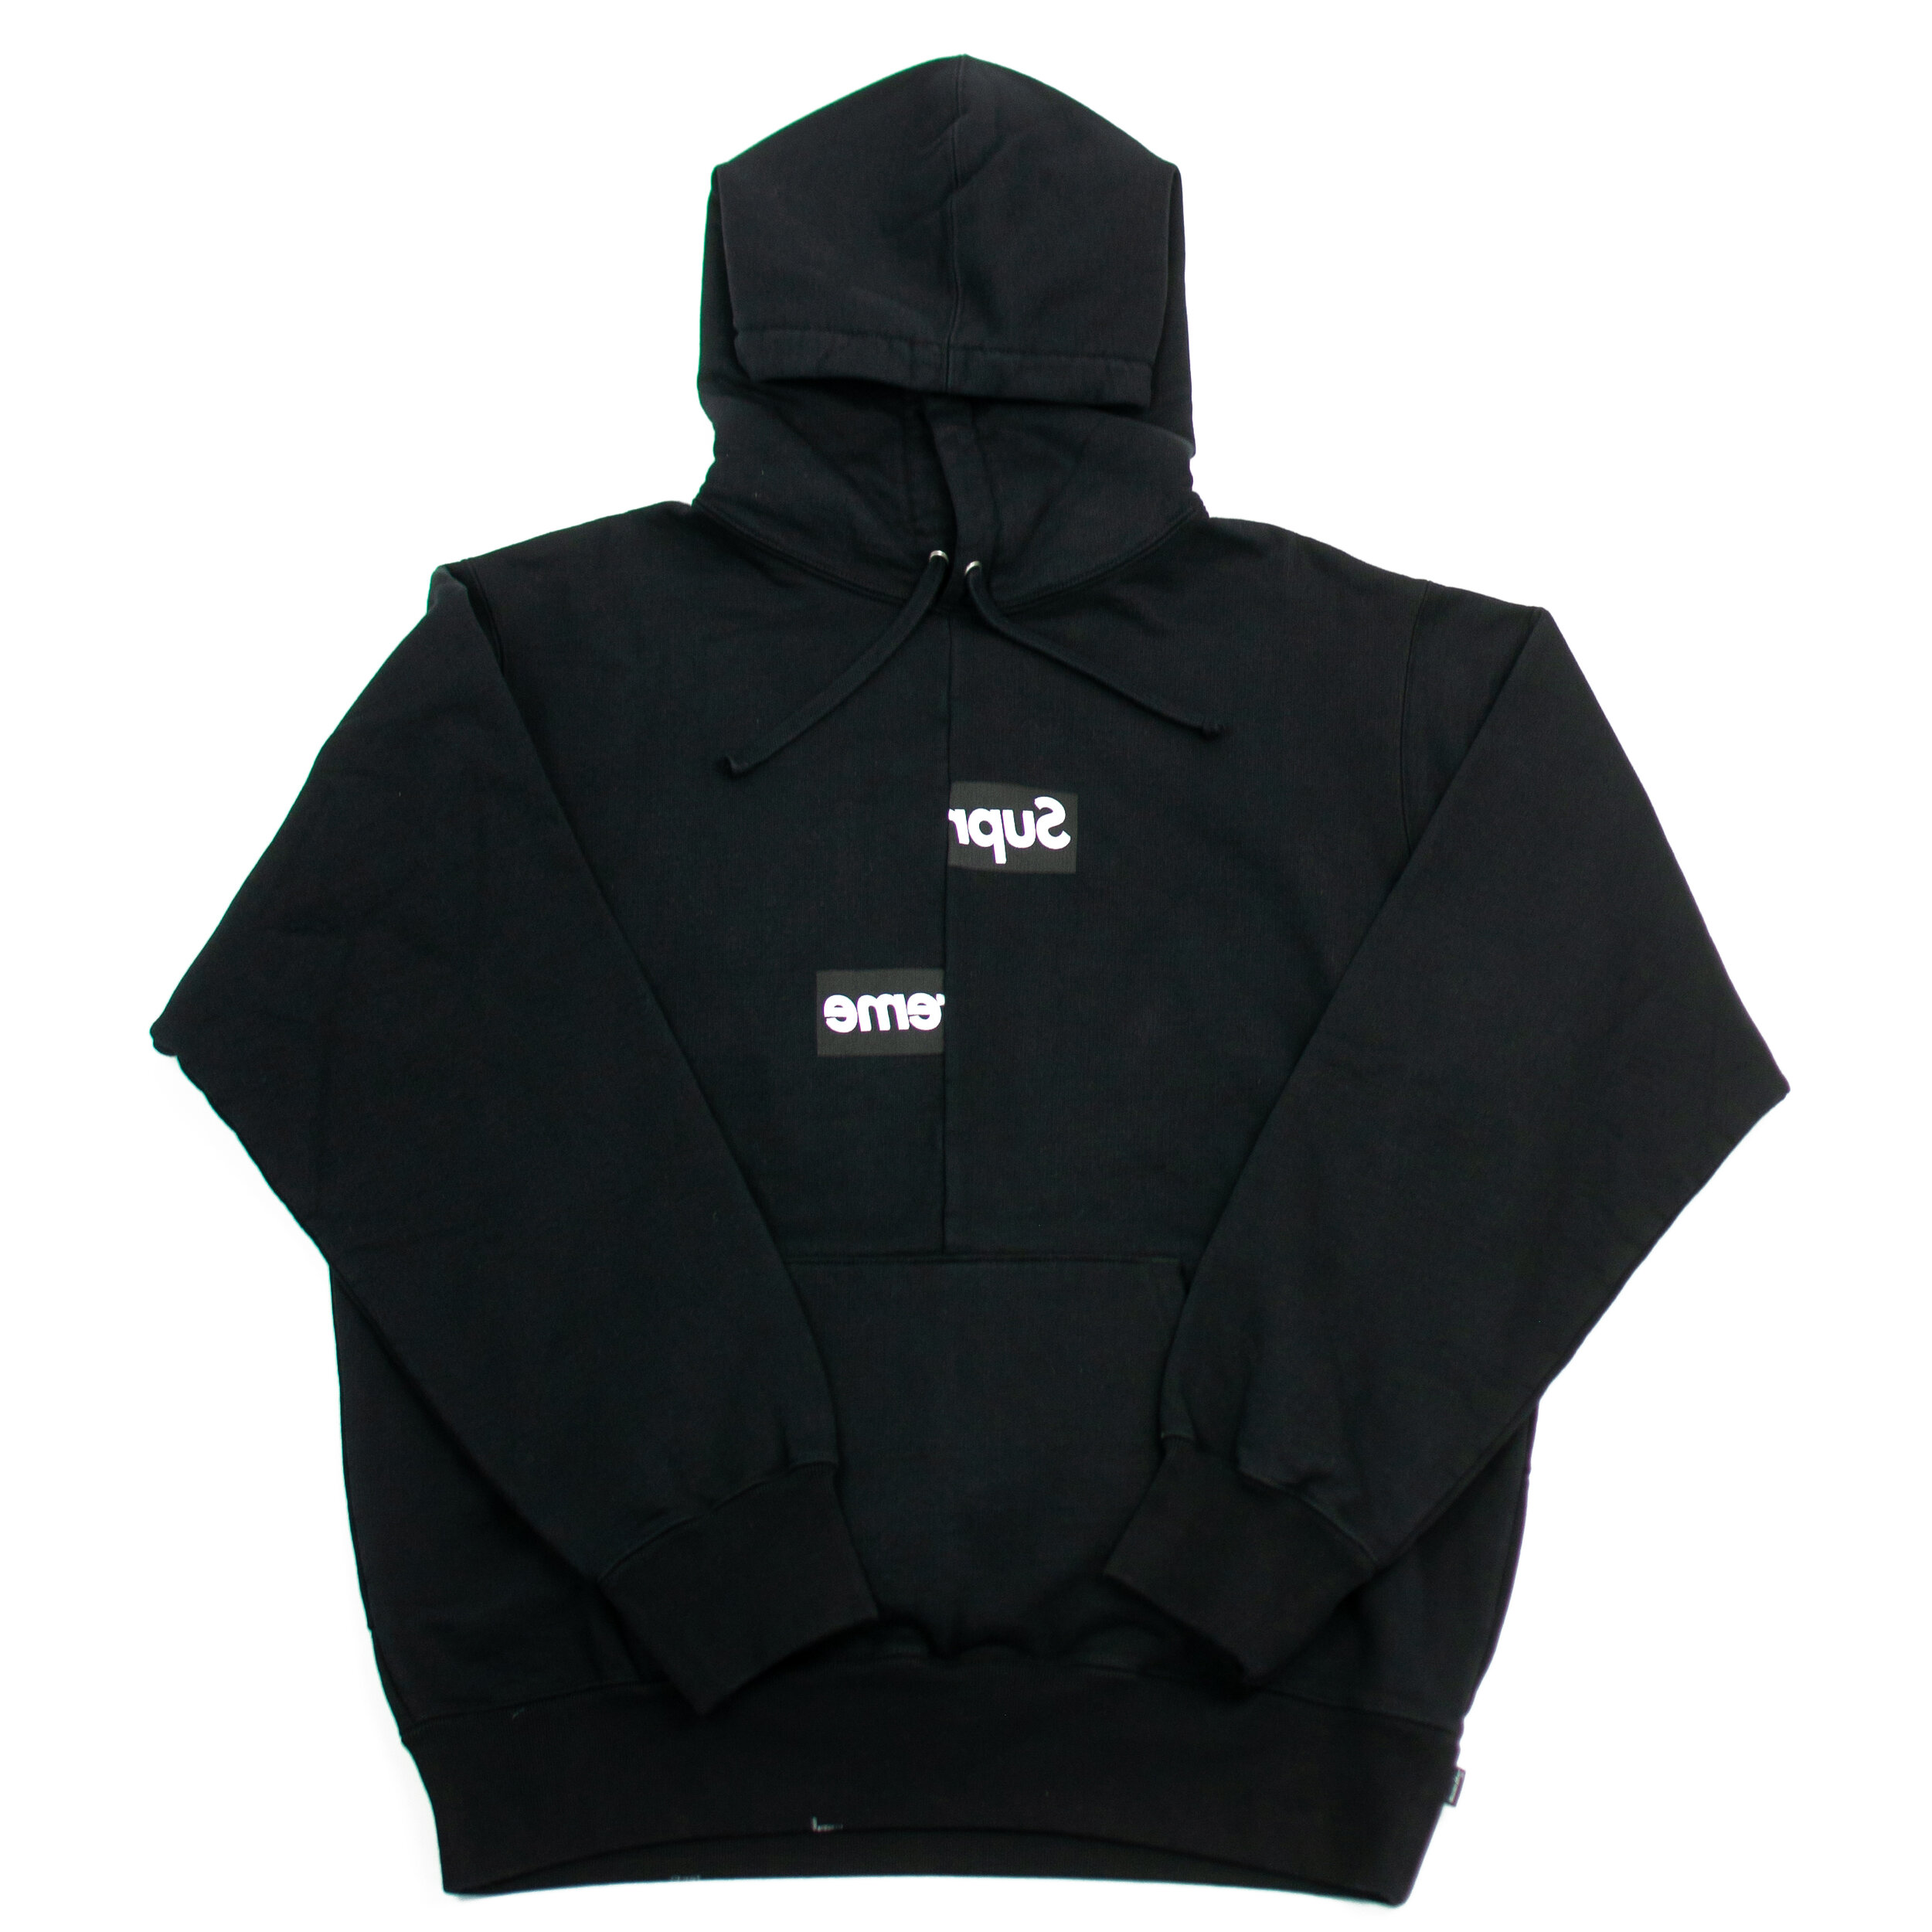 FW18 Supreme x COMME des Garçons Box Logo Sweatshirt Black — The Pop-Up📍